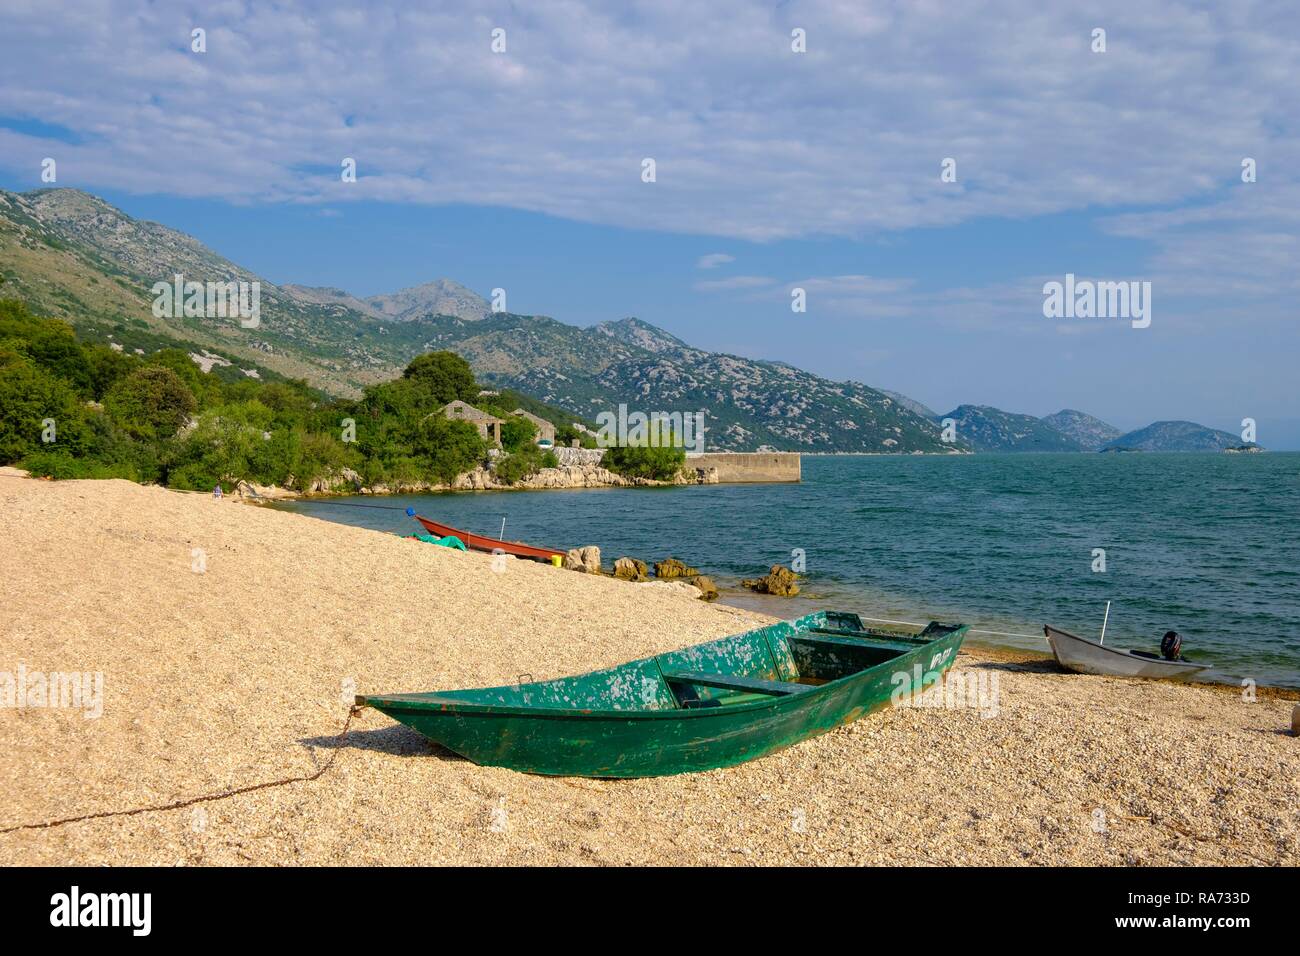 Boat at the beach in Murici, Lake Skadar, Skadarsko Jezero, Lake Skadar National Park, near Bar, Montenegro Stock Photo